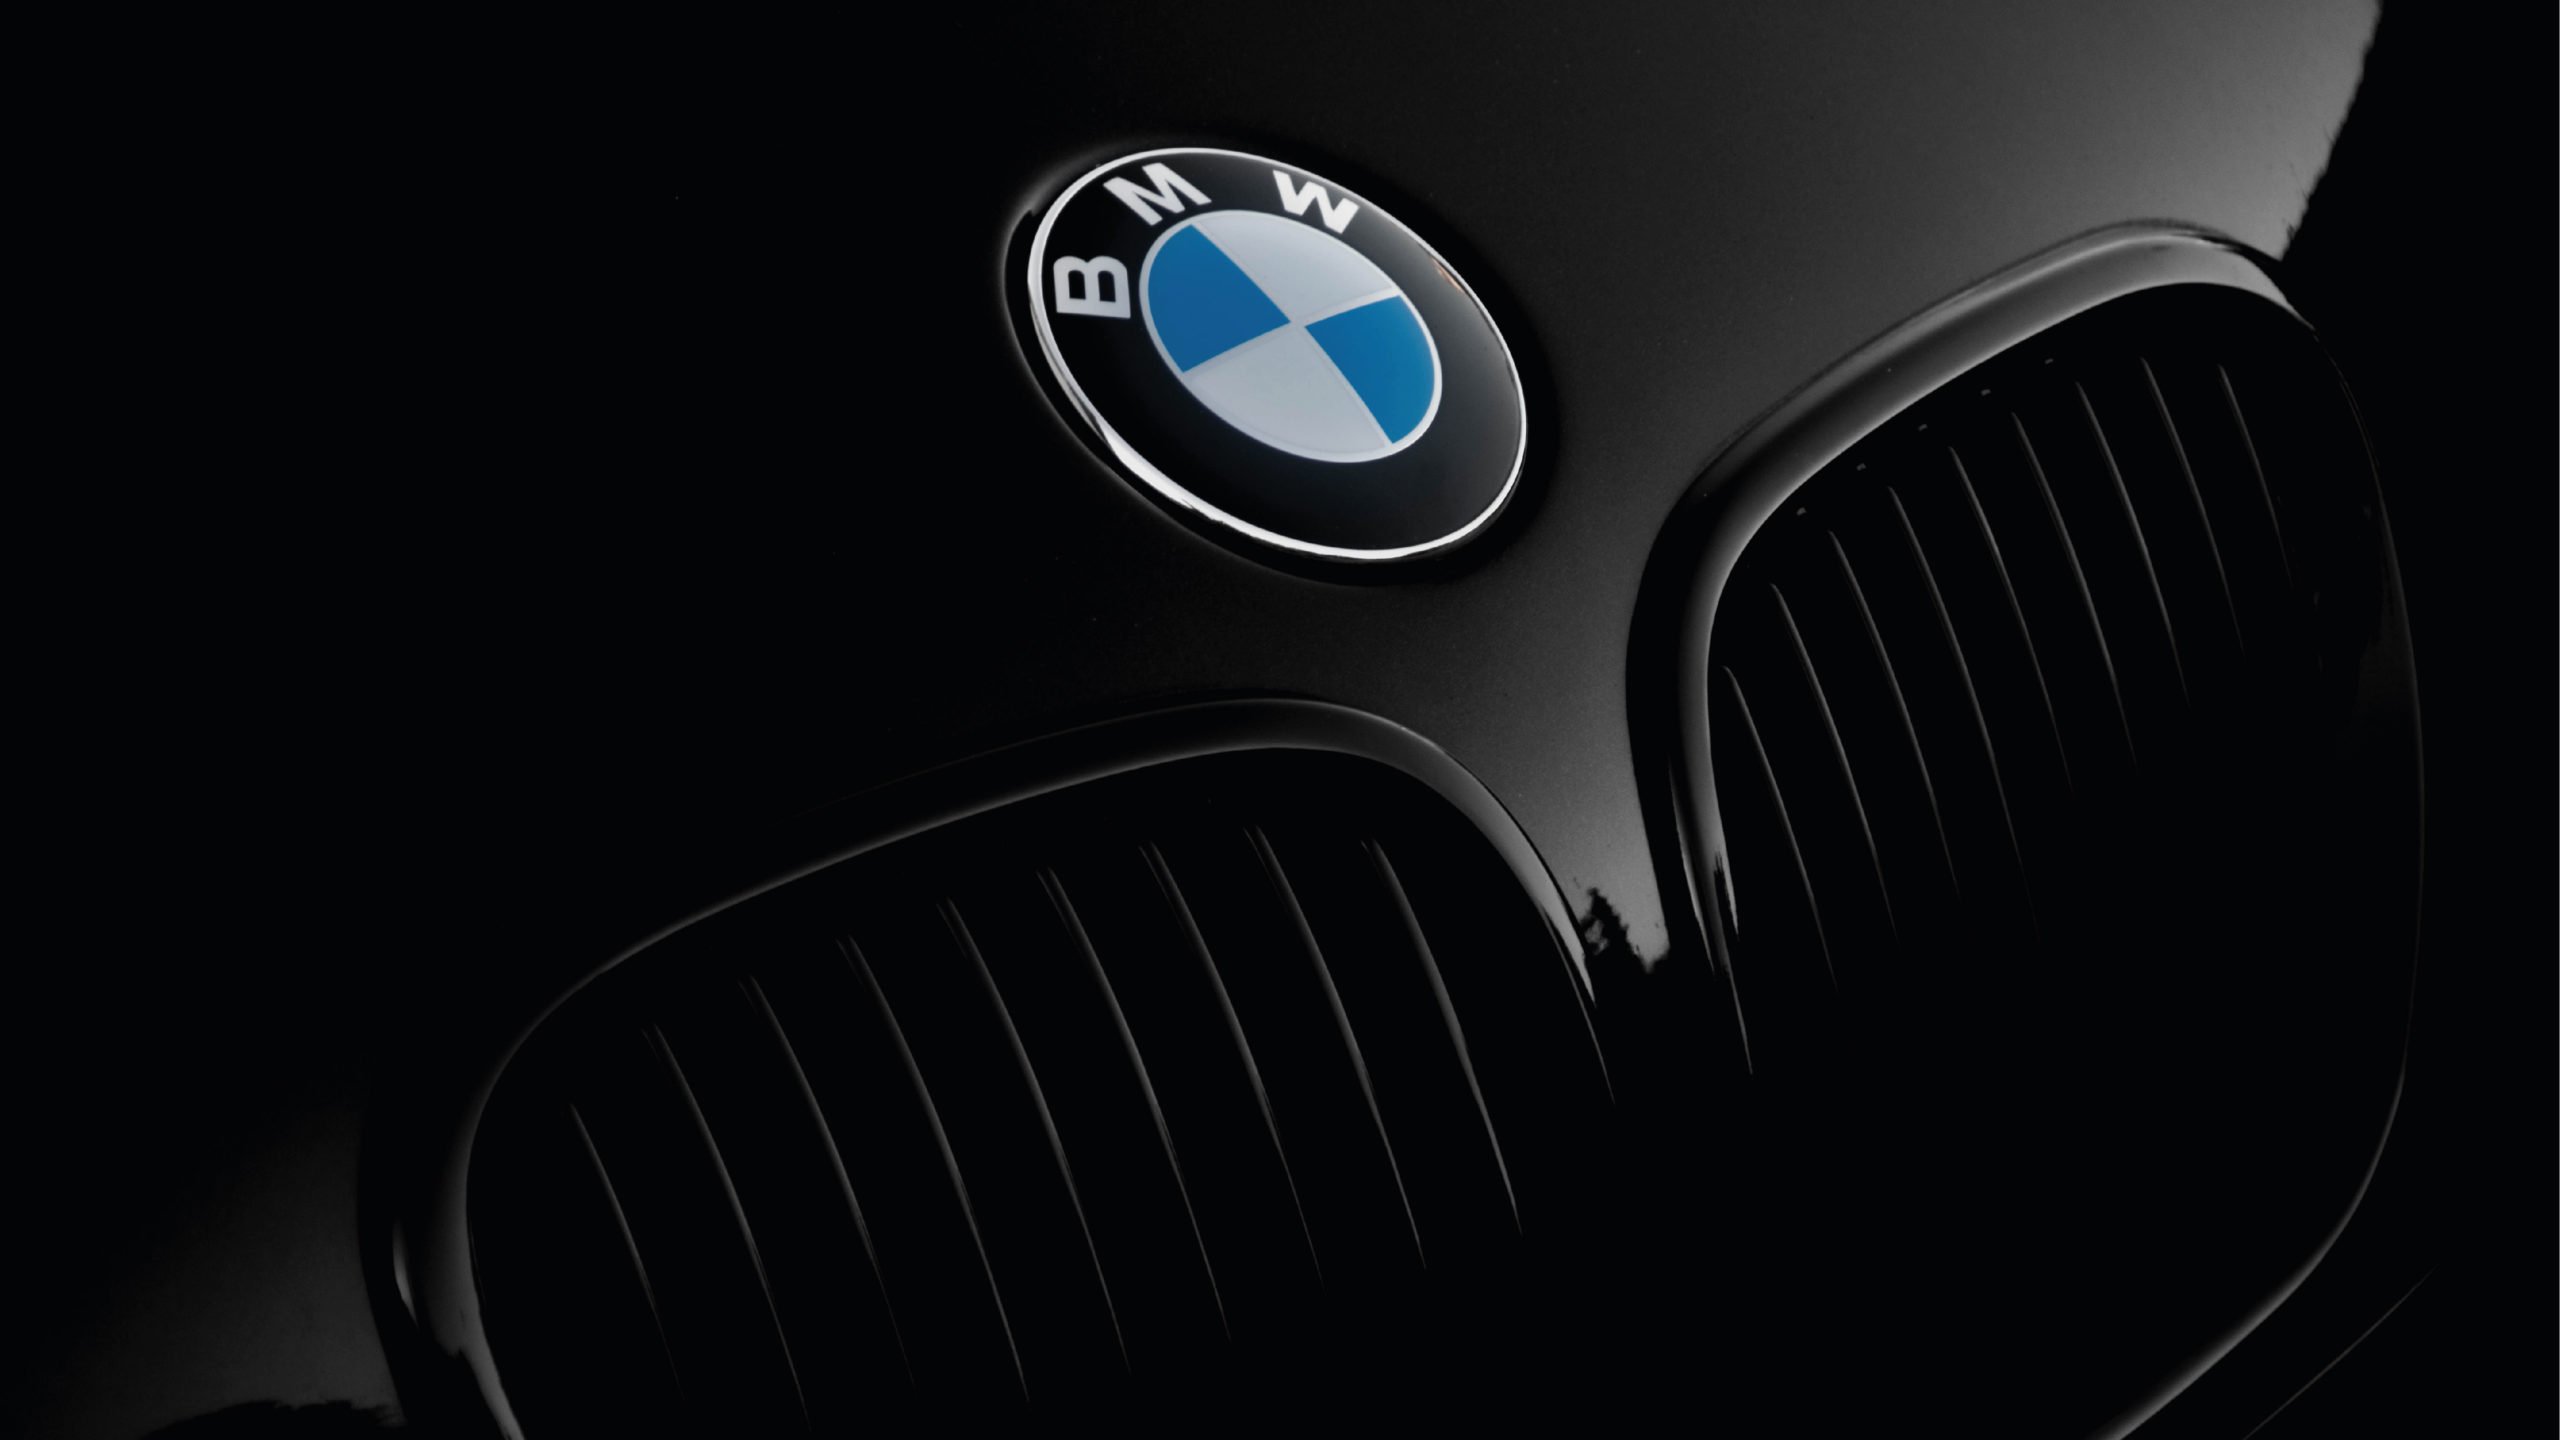 Alzas en tasas de interés, el principal reto para financiar autos: BMW Latam